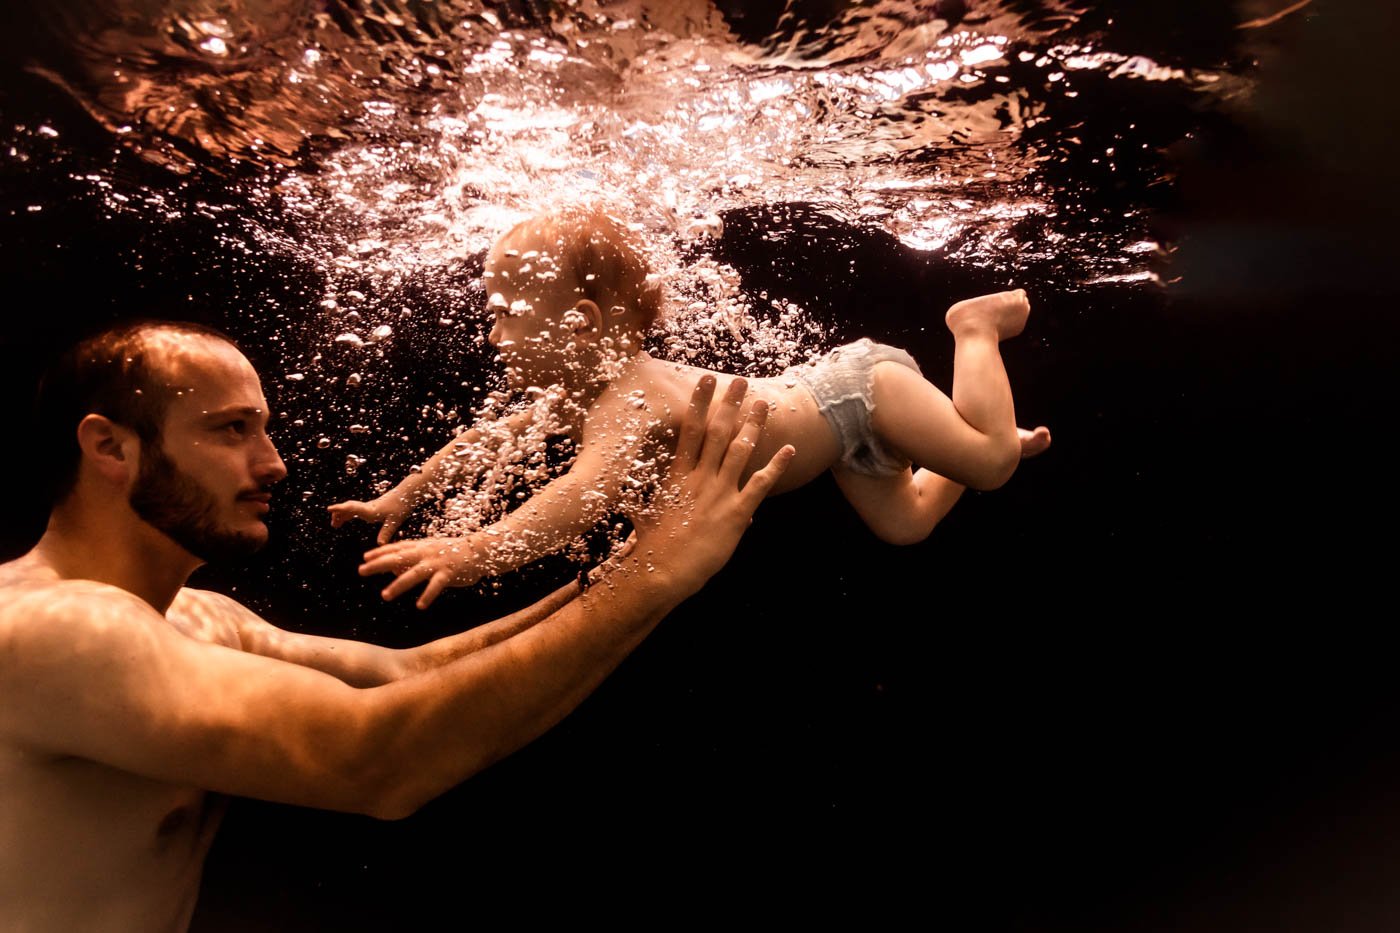 marie-landoin-photographe-bebe-nageur-aquatique-lyon-28.jpg